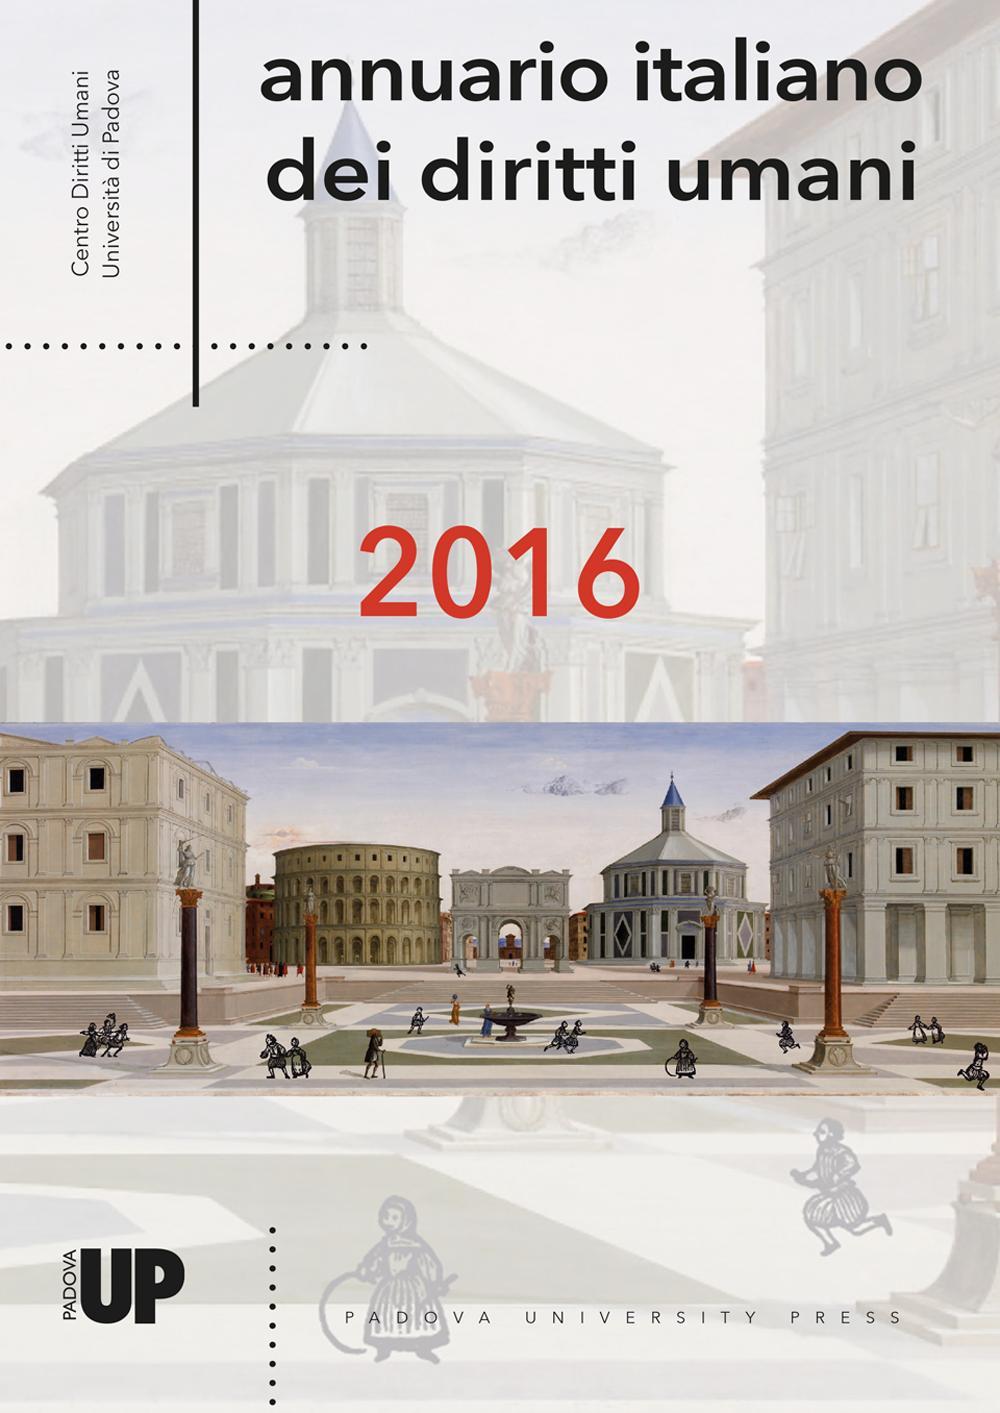 Annuario italiano dei diritti umani 2016